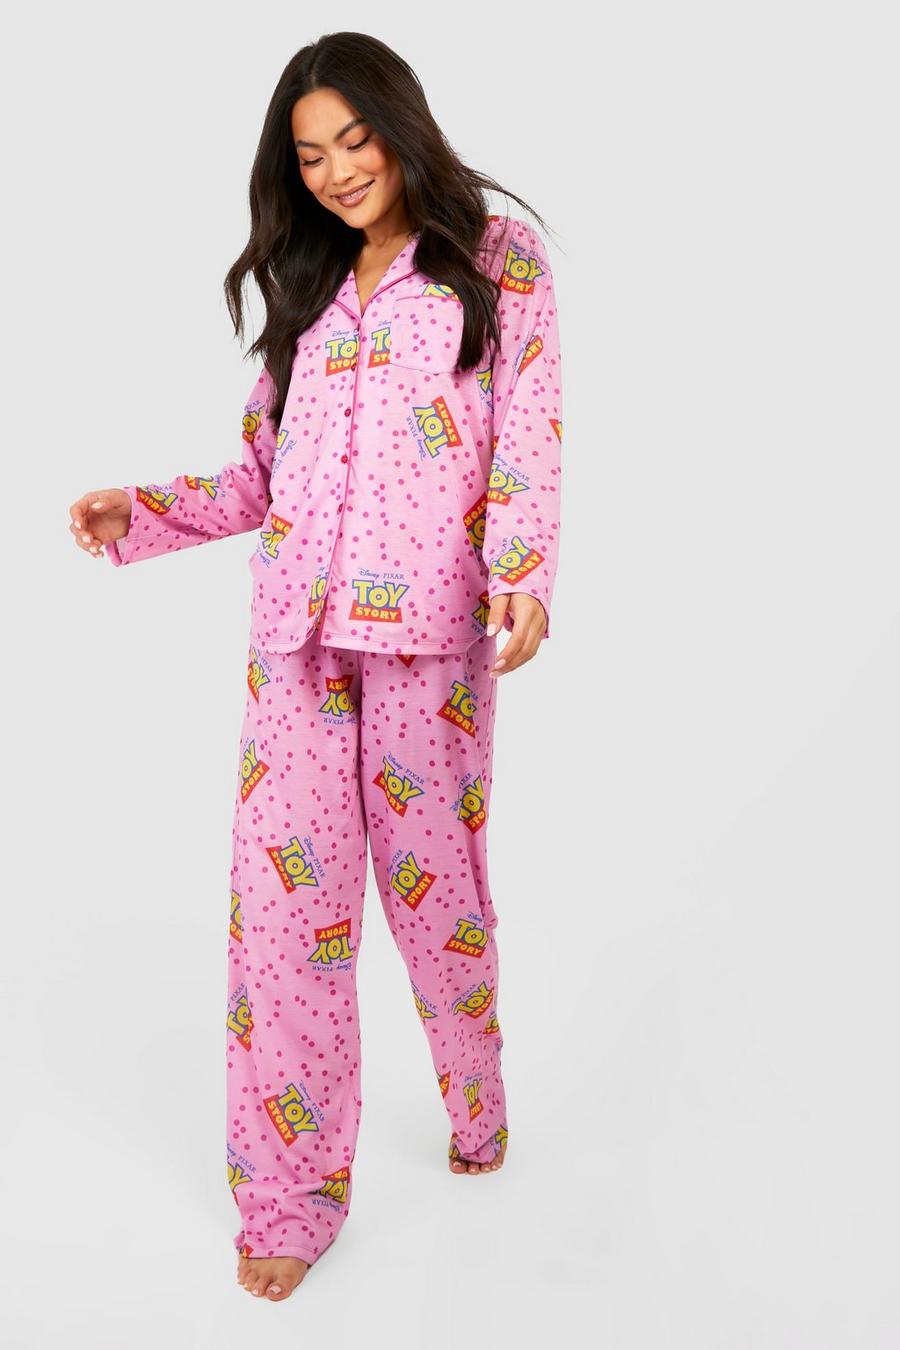 Pijama de Disney con pantalón, botones y estampado de Toy Story, Pink rosa